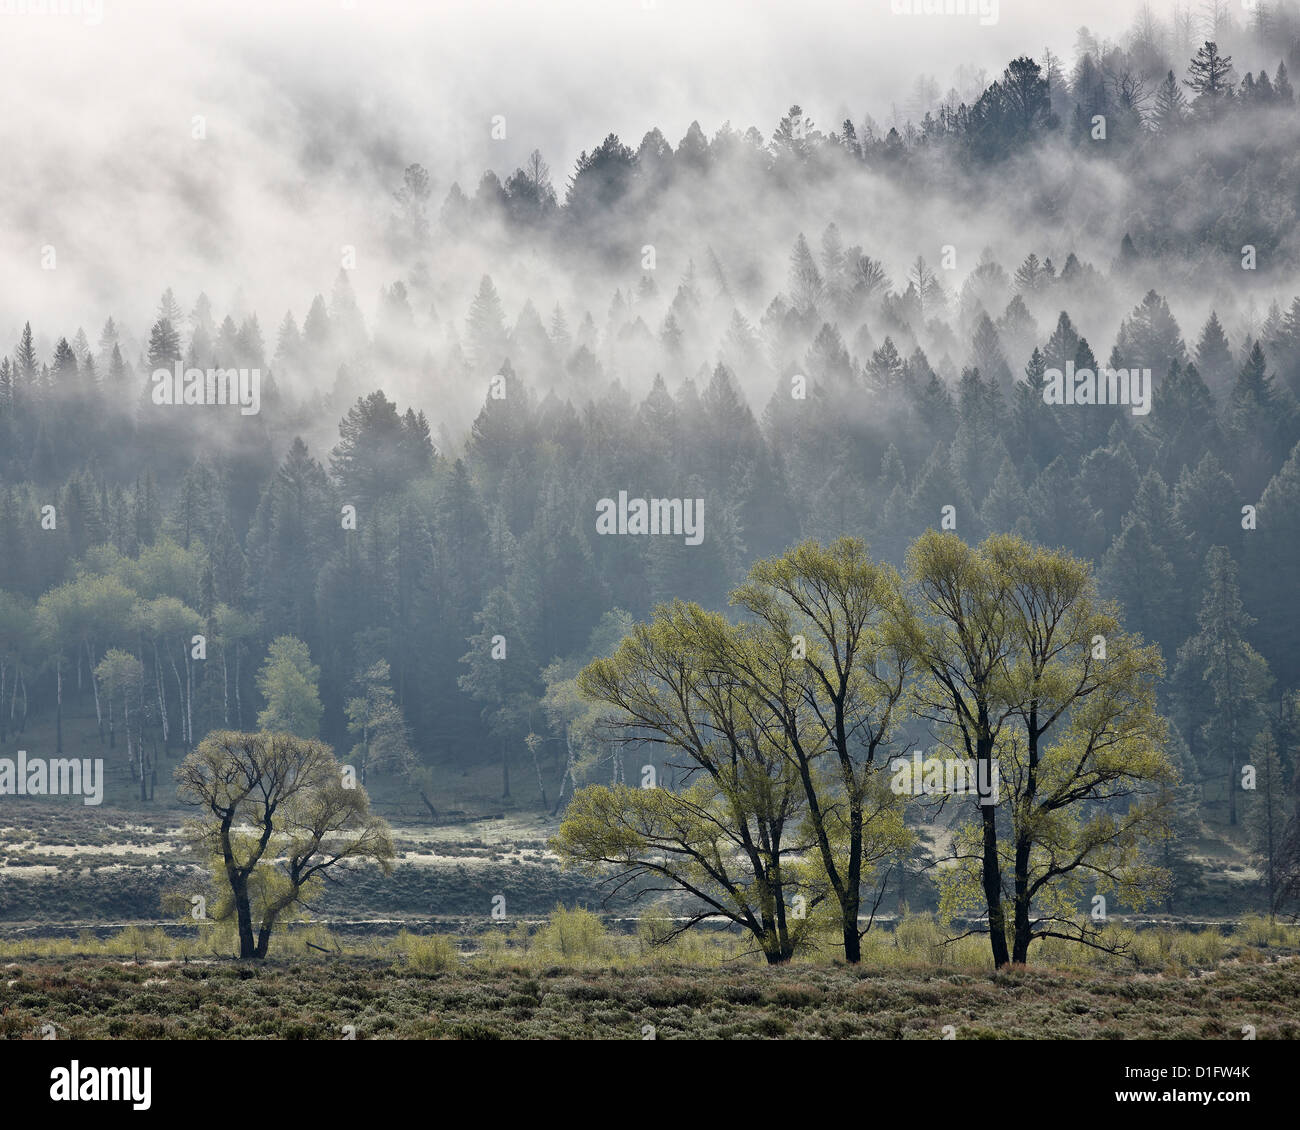 La niebla se entremezclan con árboles de hoja perenne con algunos chopos, Parque Nacional Yellowstone, Wyoming, Estados Unidos de América Foto de stock